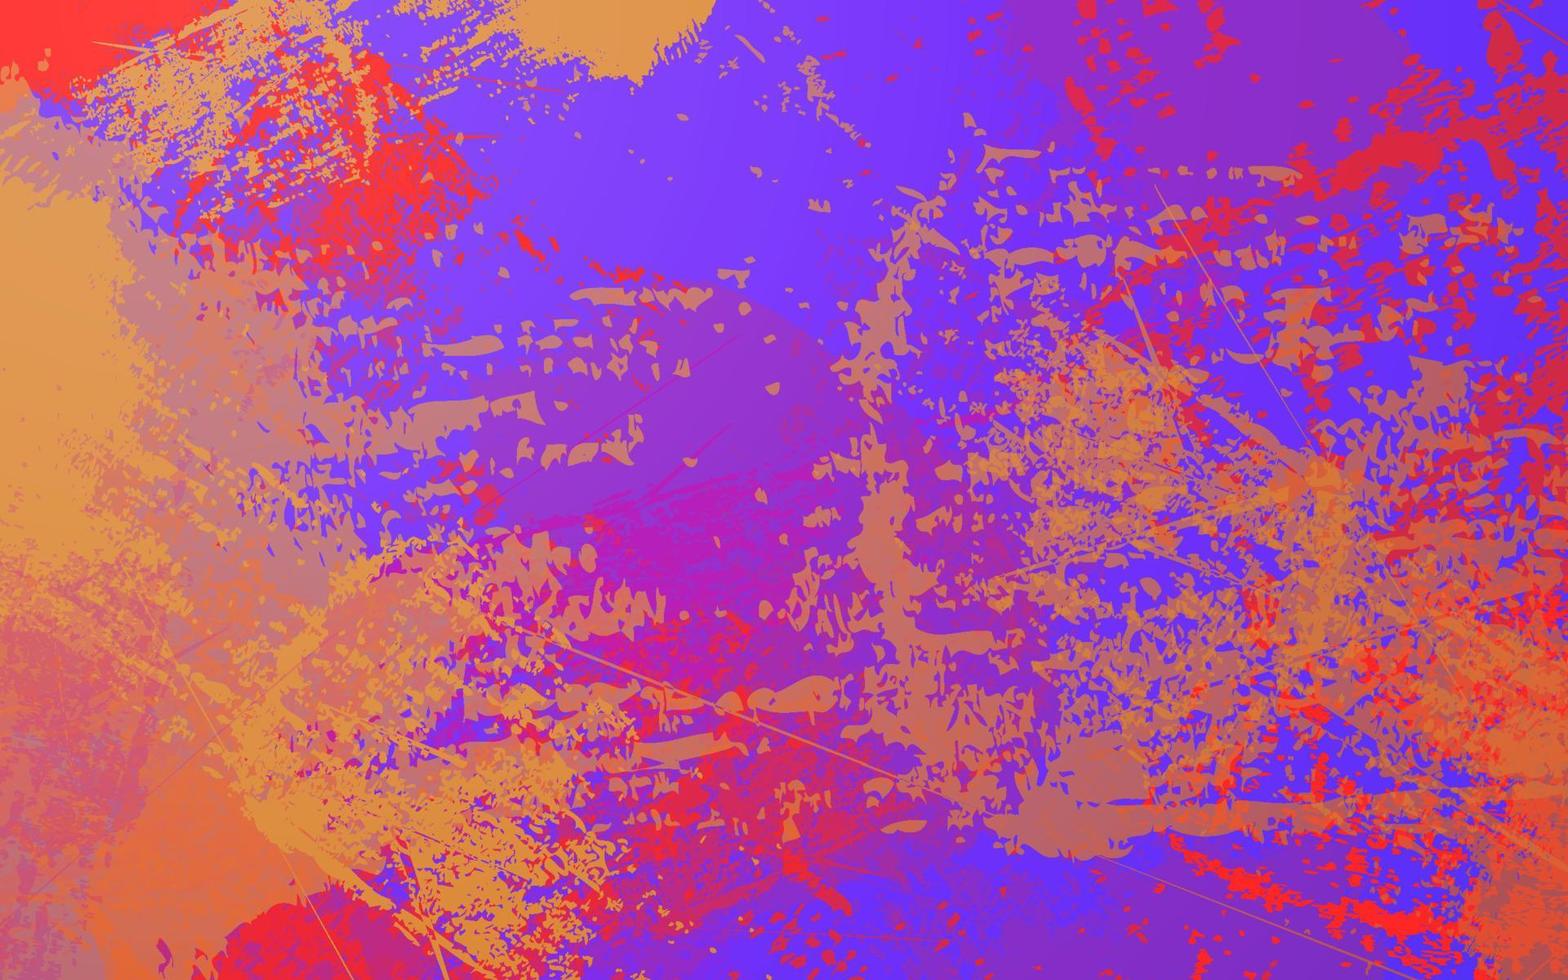 mehrfarbiger Hintergrund der abstrakten Schmutzbeschaffenheit vektor